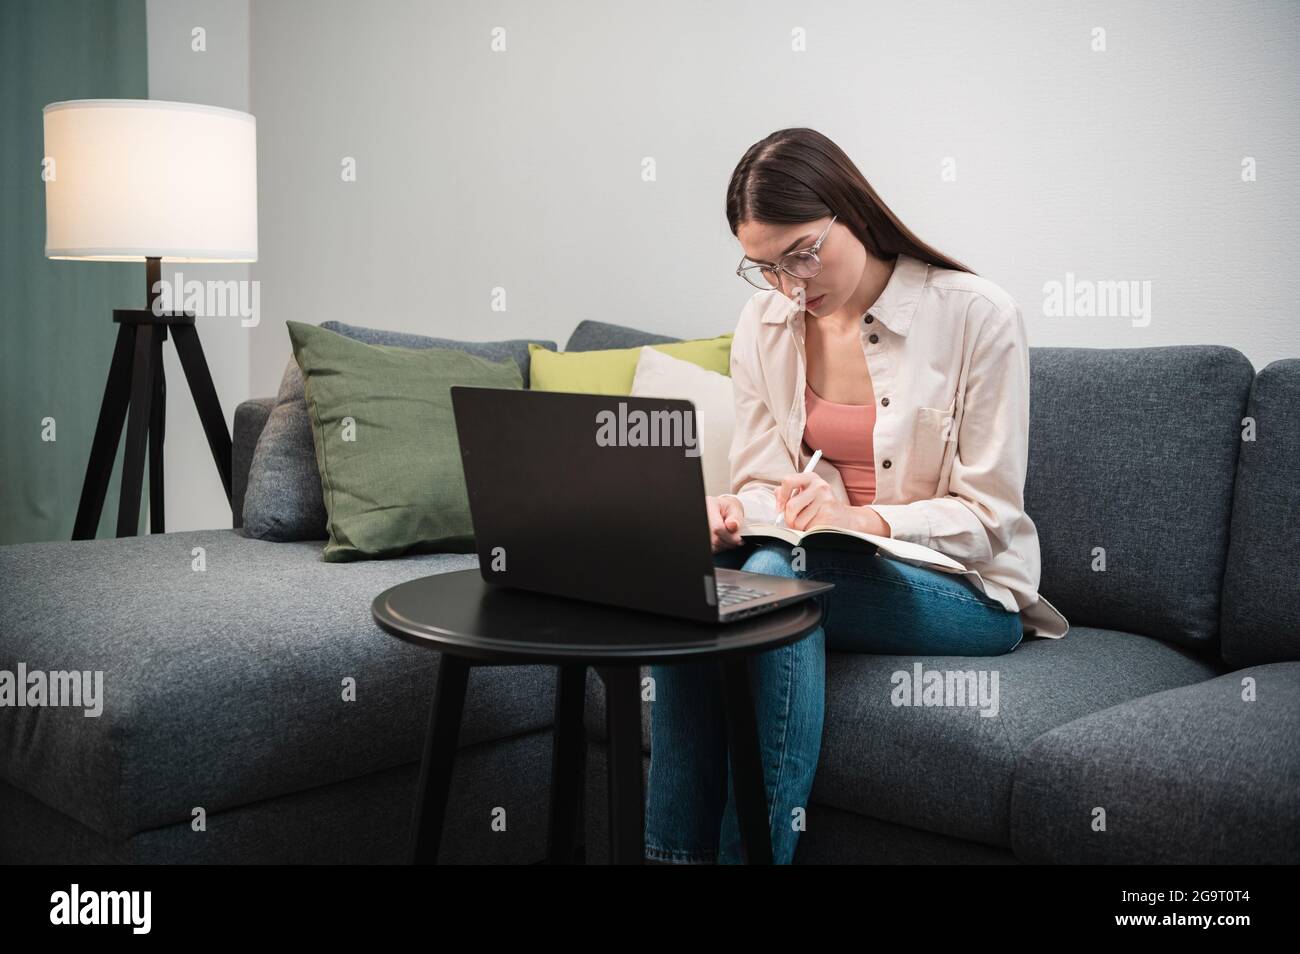 Une jeune fille spécialiste est à un travail à distance, elle est assise à la maison sur le canapé, sur la table à côté d'elle est un ordinateur portable. Banque D'Images